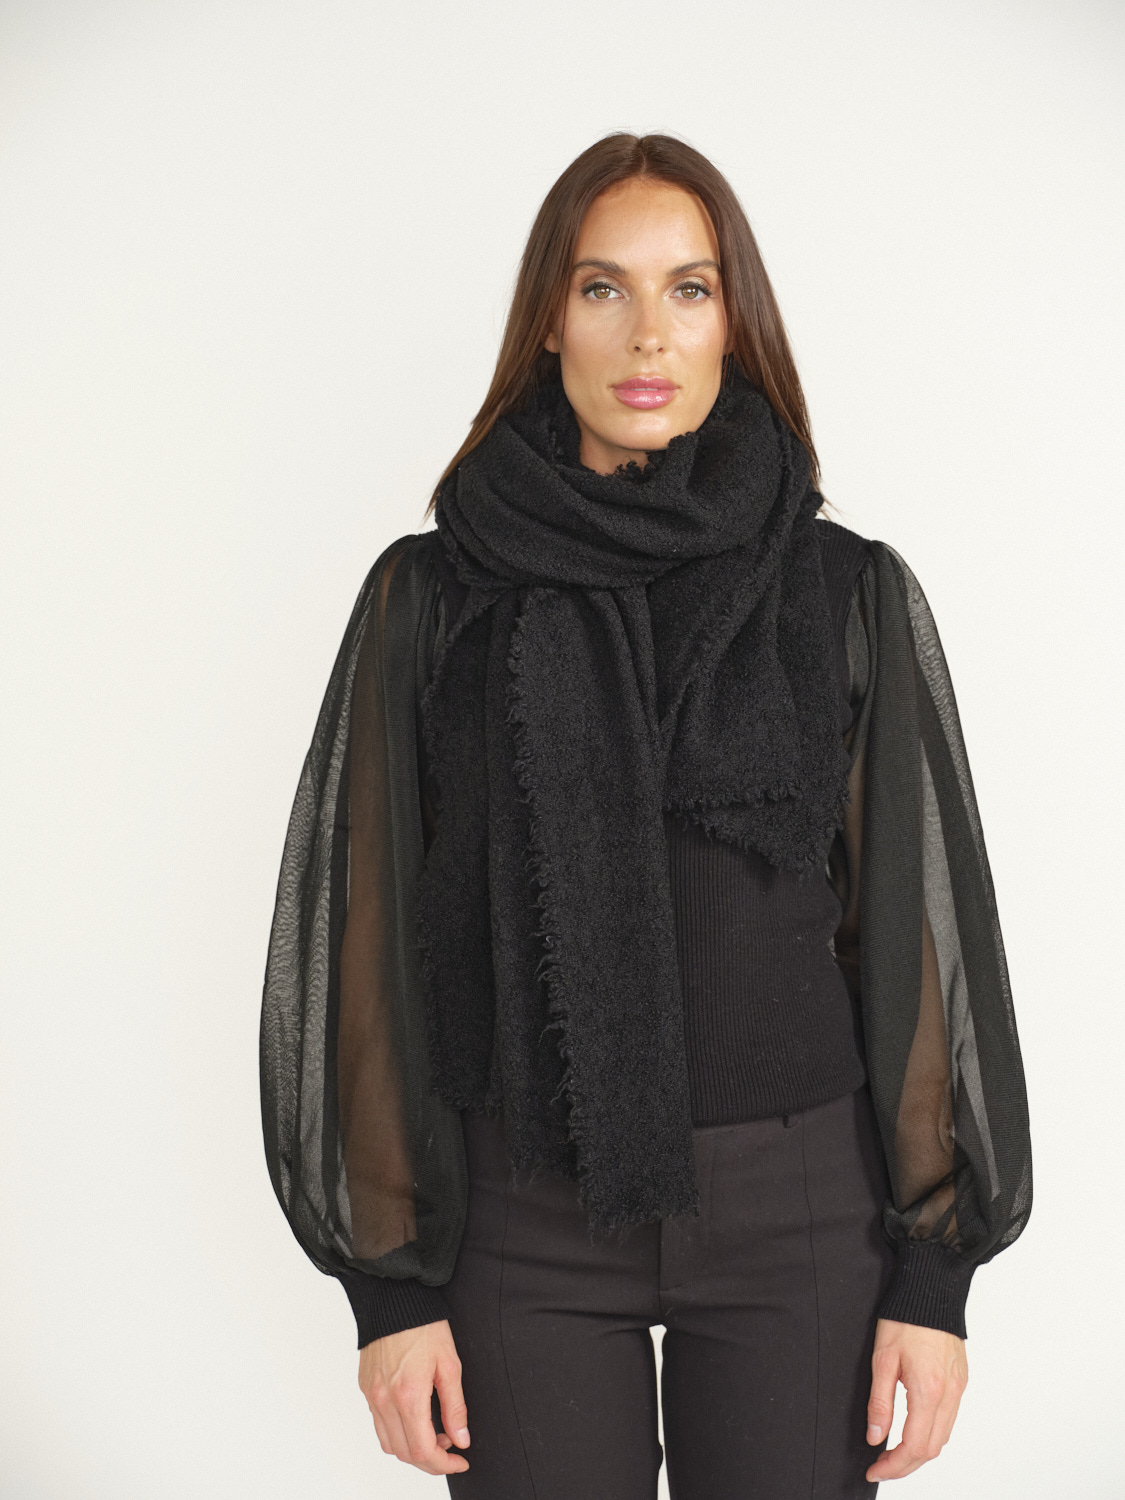 Faliero Sarti Alexia – Rechteckiger Schal aus Wolle und Cashmere grau One Size